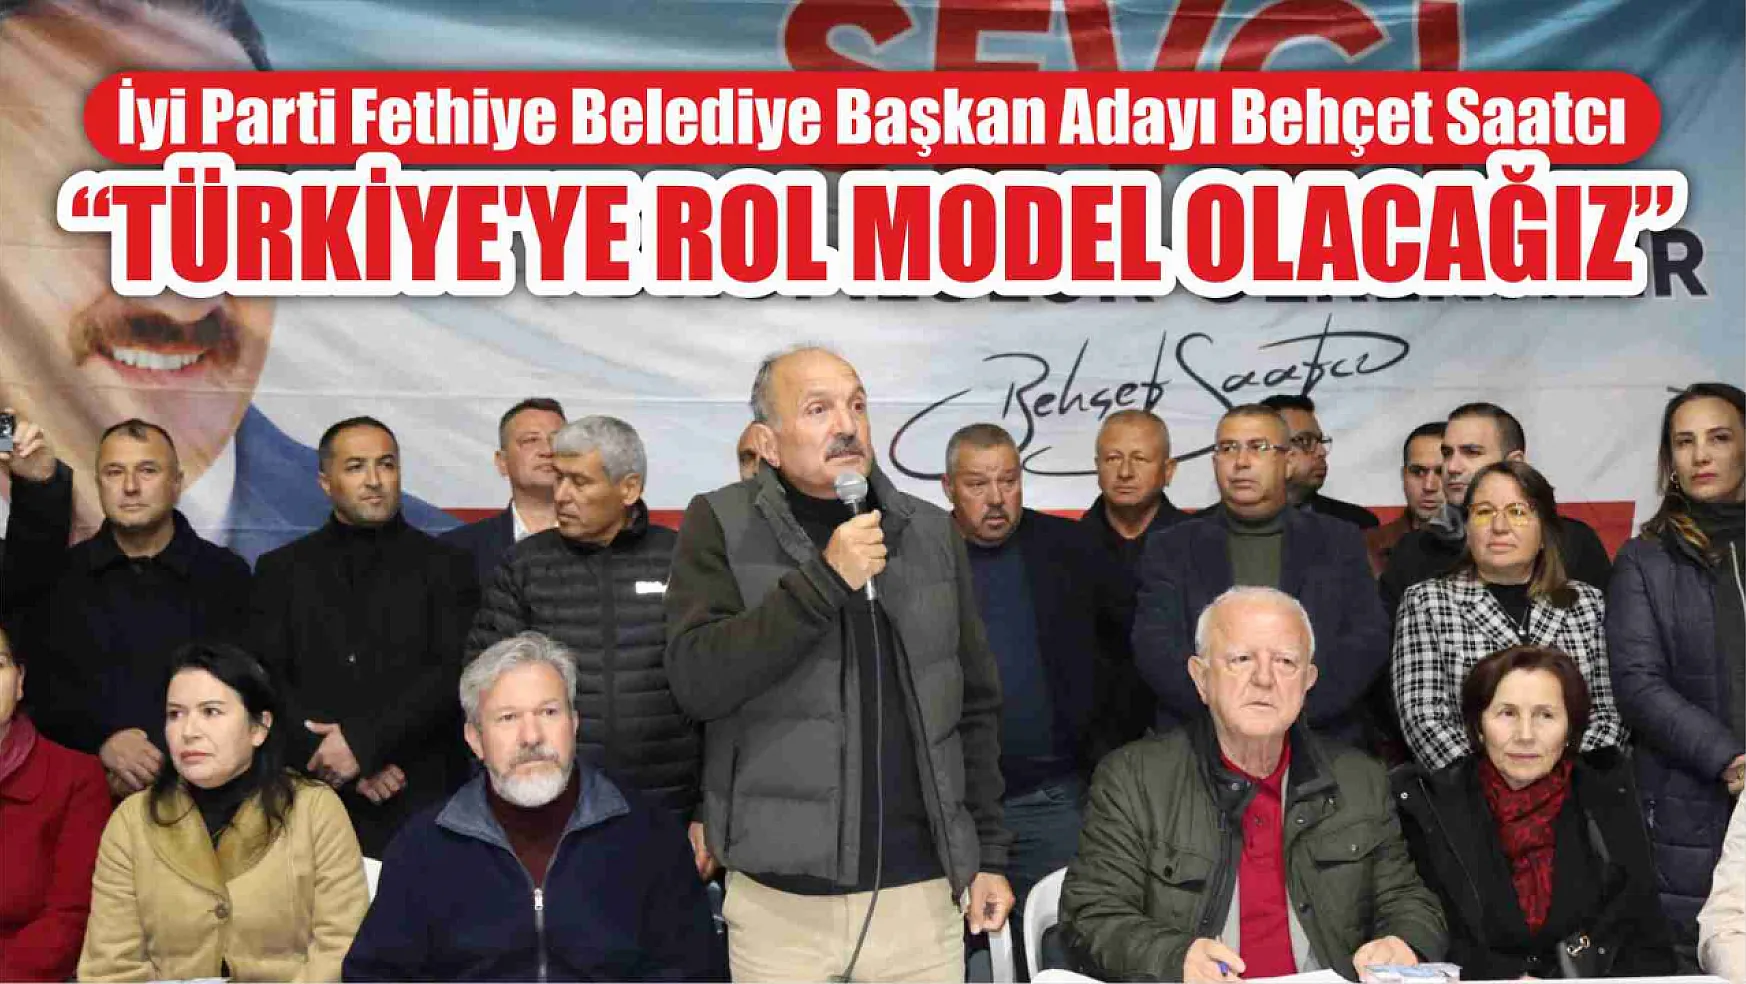 Saatcı, 'Türkiye'ye Rol Model Olacağız'